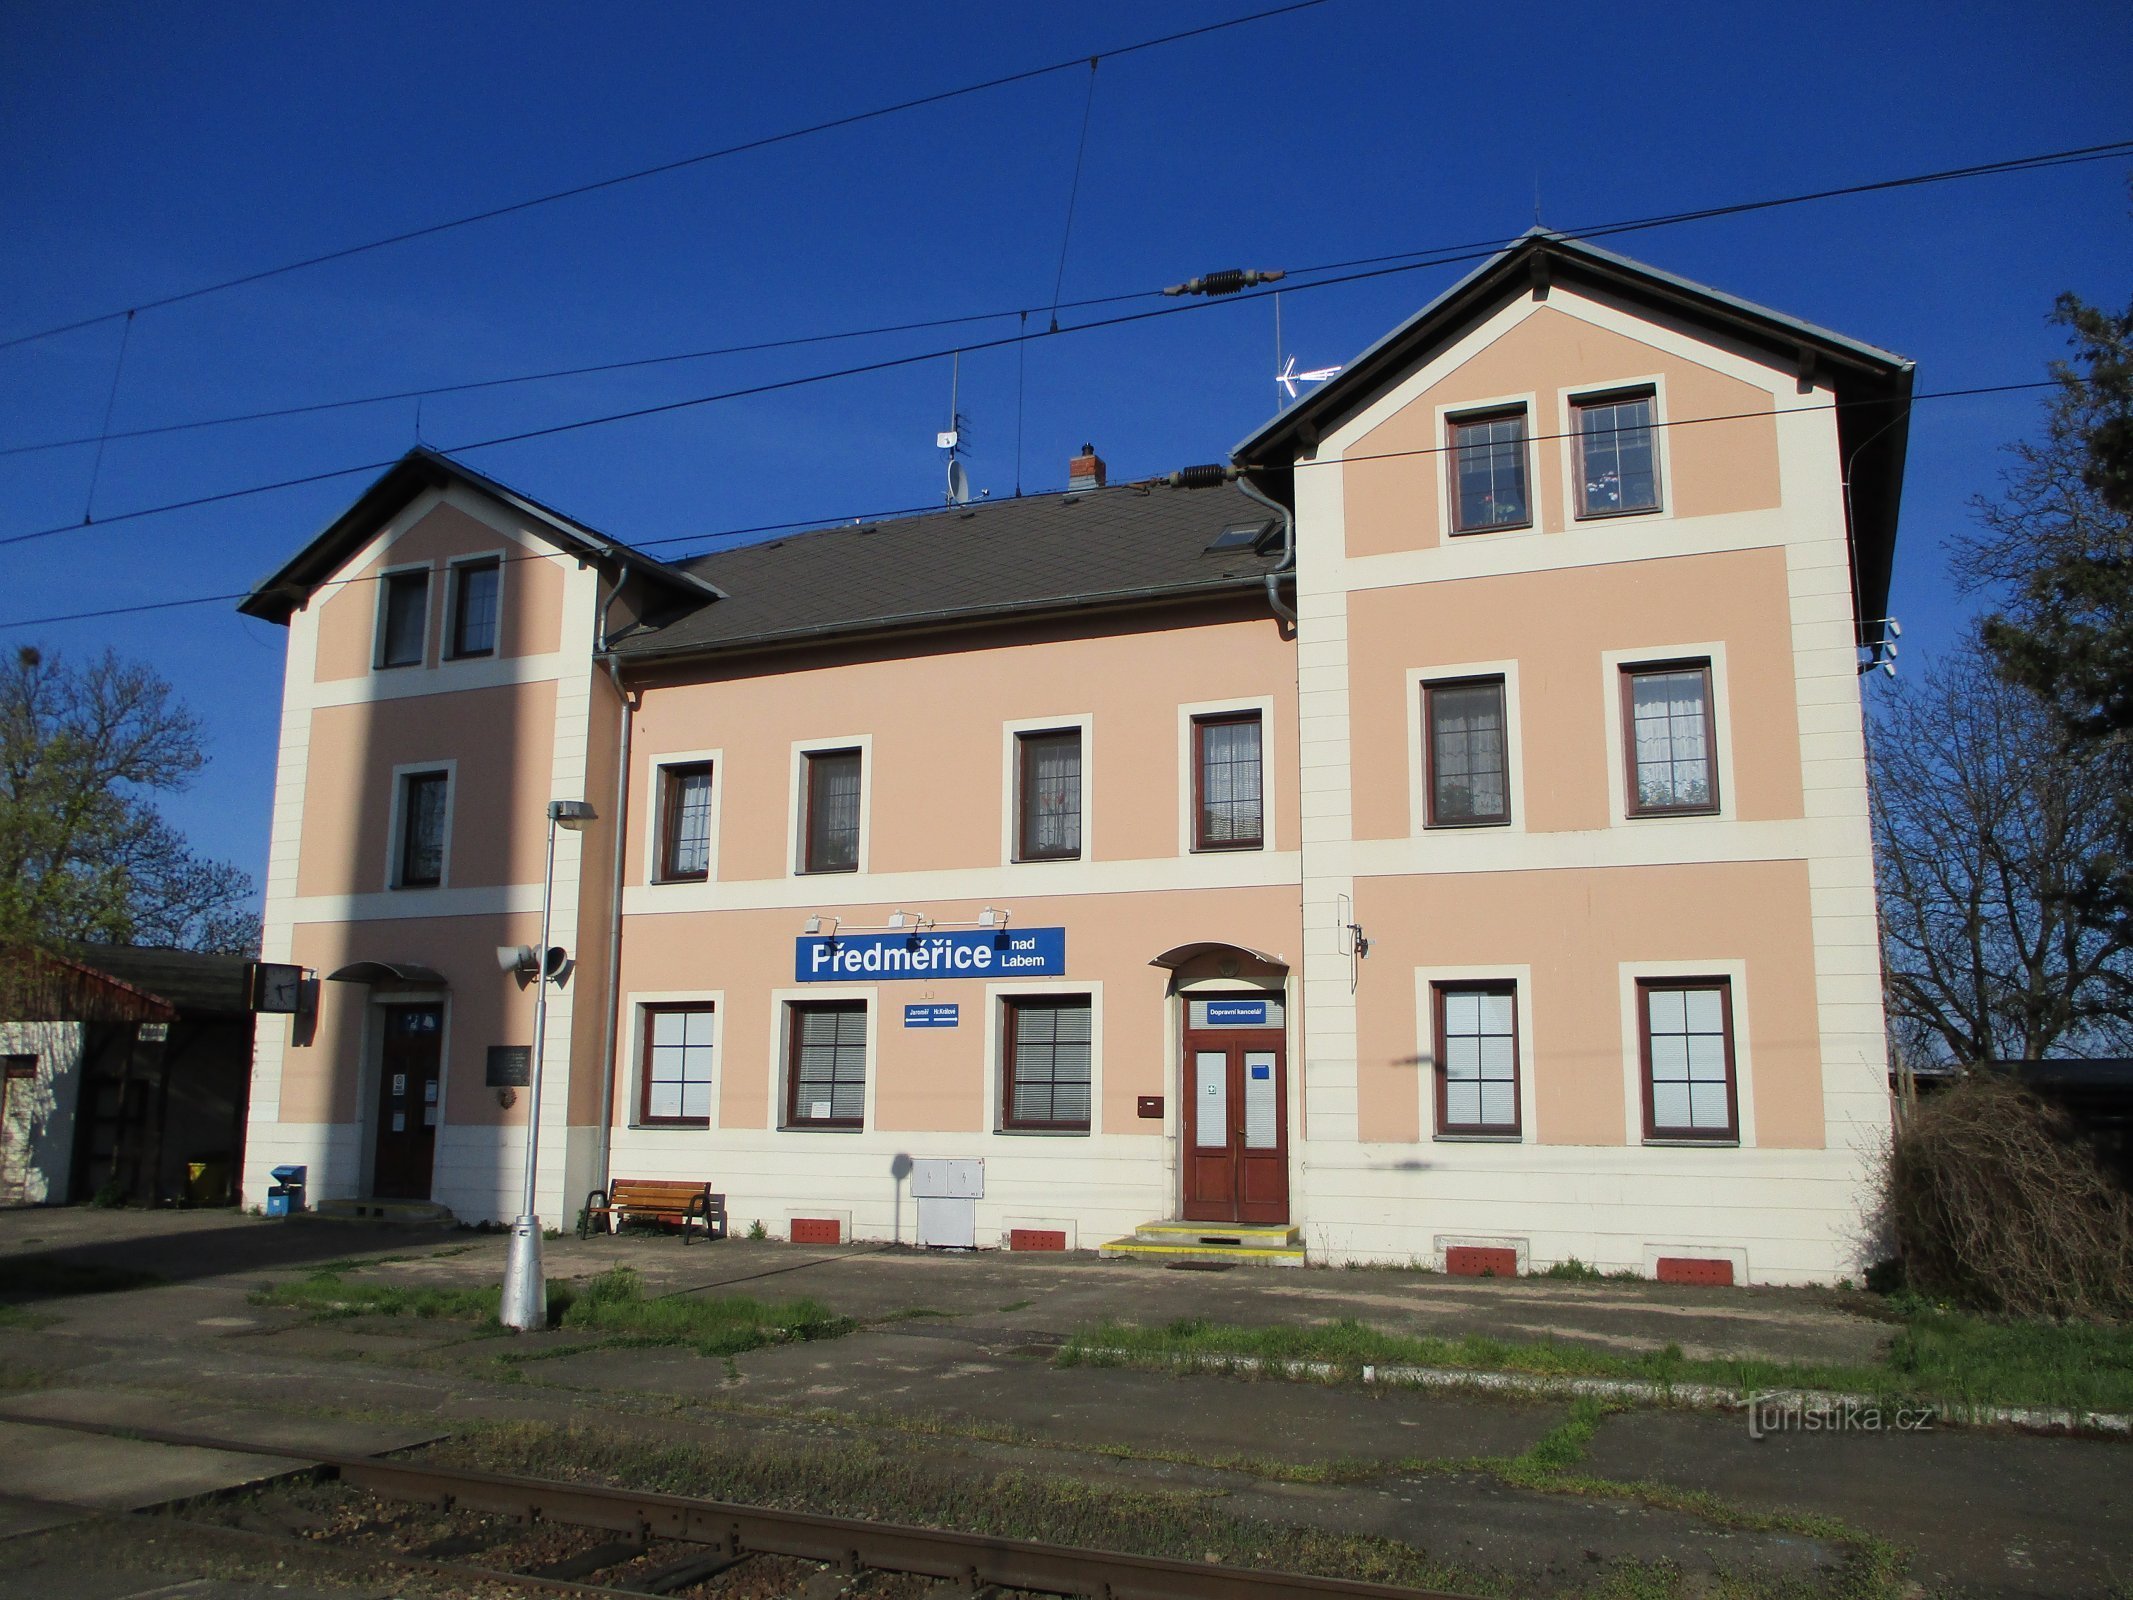 Kujalla nro 130 (Předměřice nad Labem, 11.4.2020)